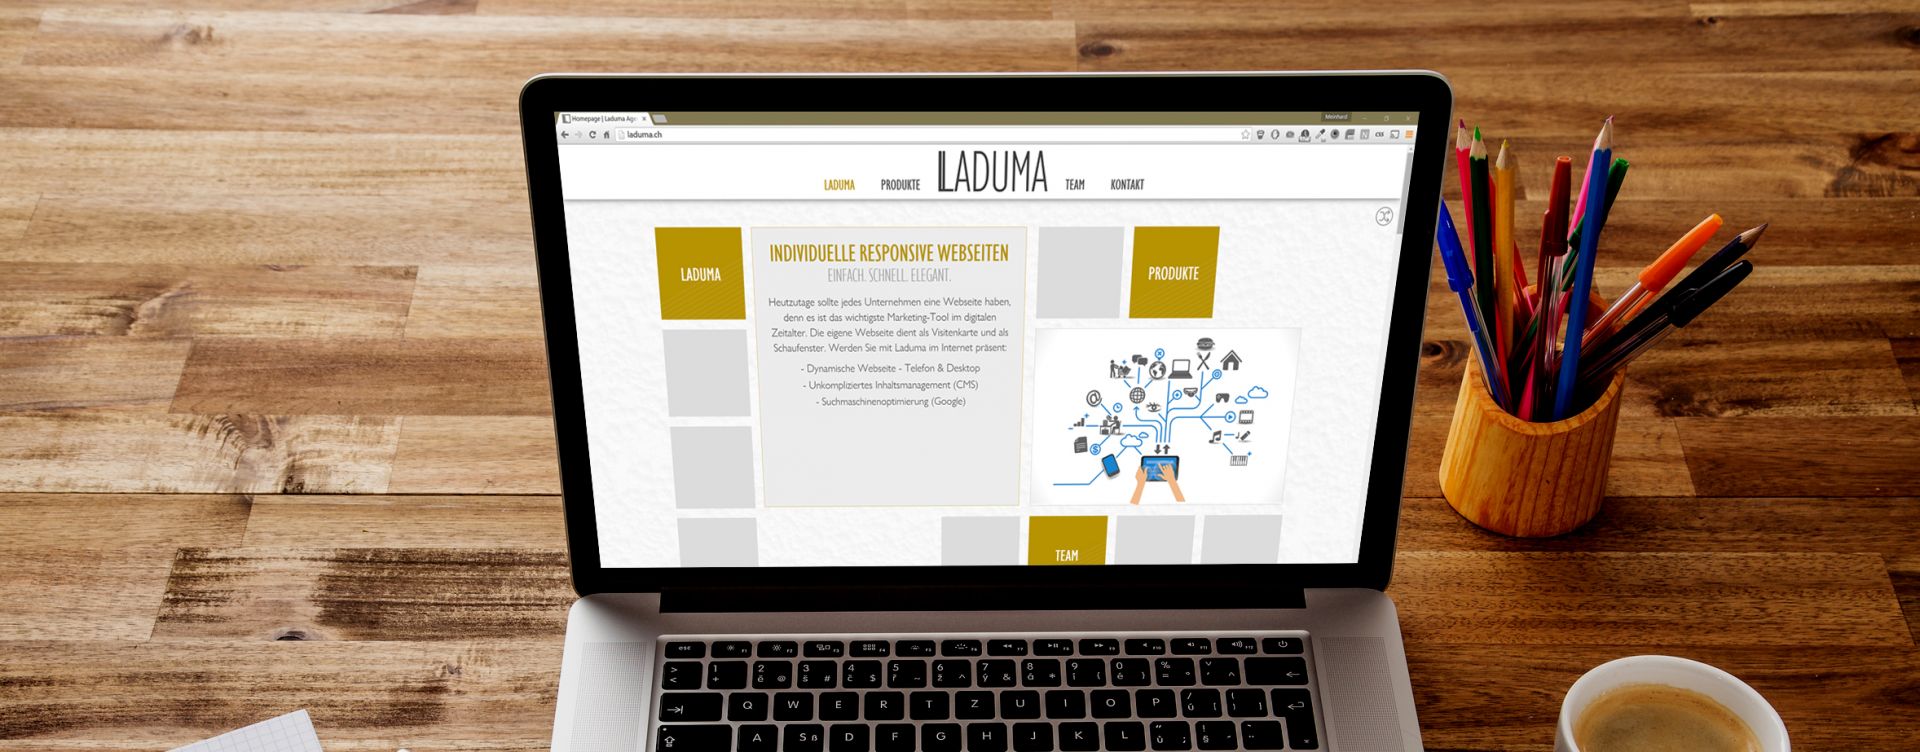 Ladumas Webseite auf einem Laptop dargestellt